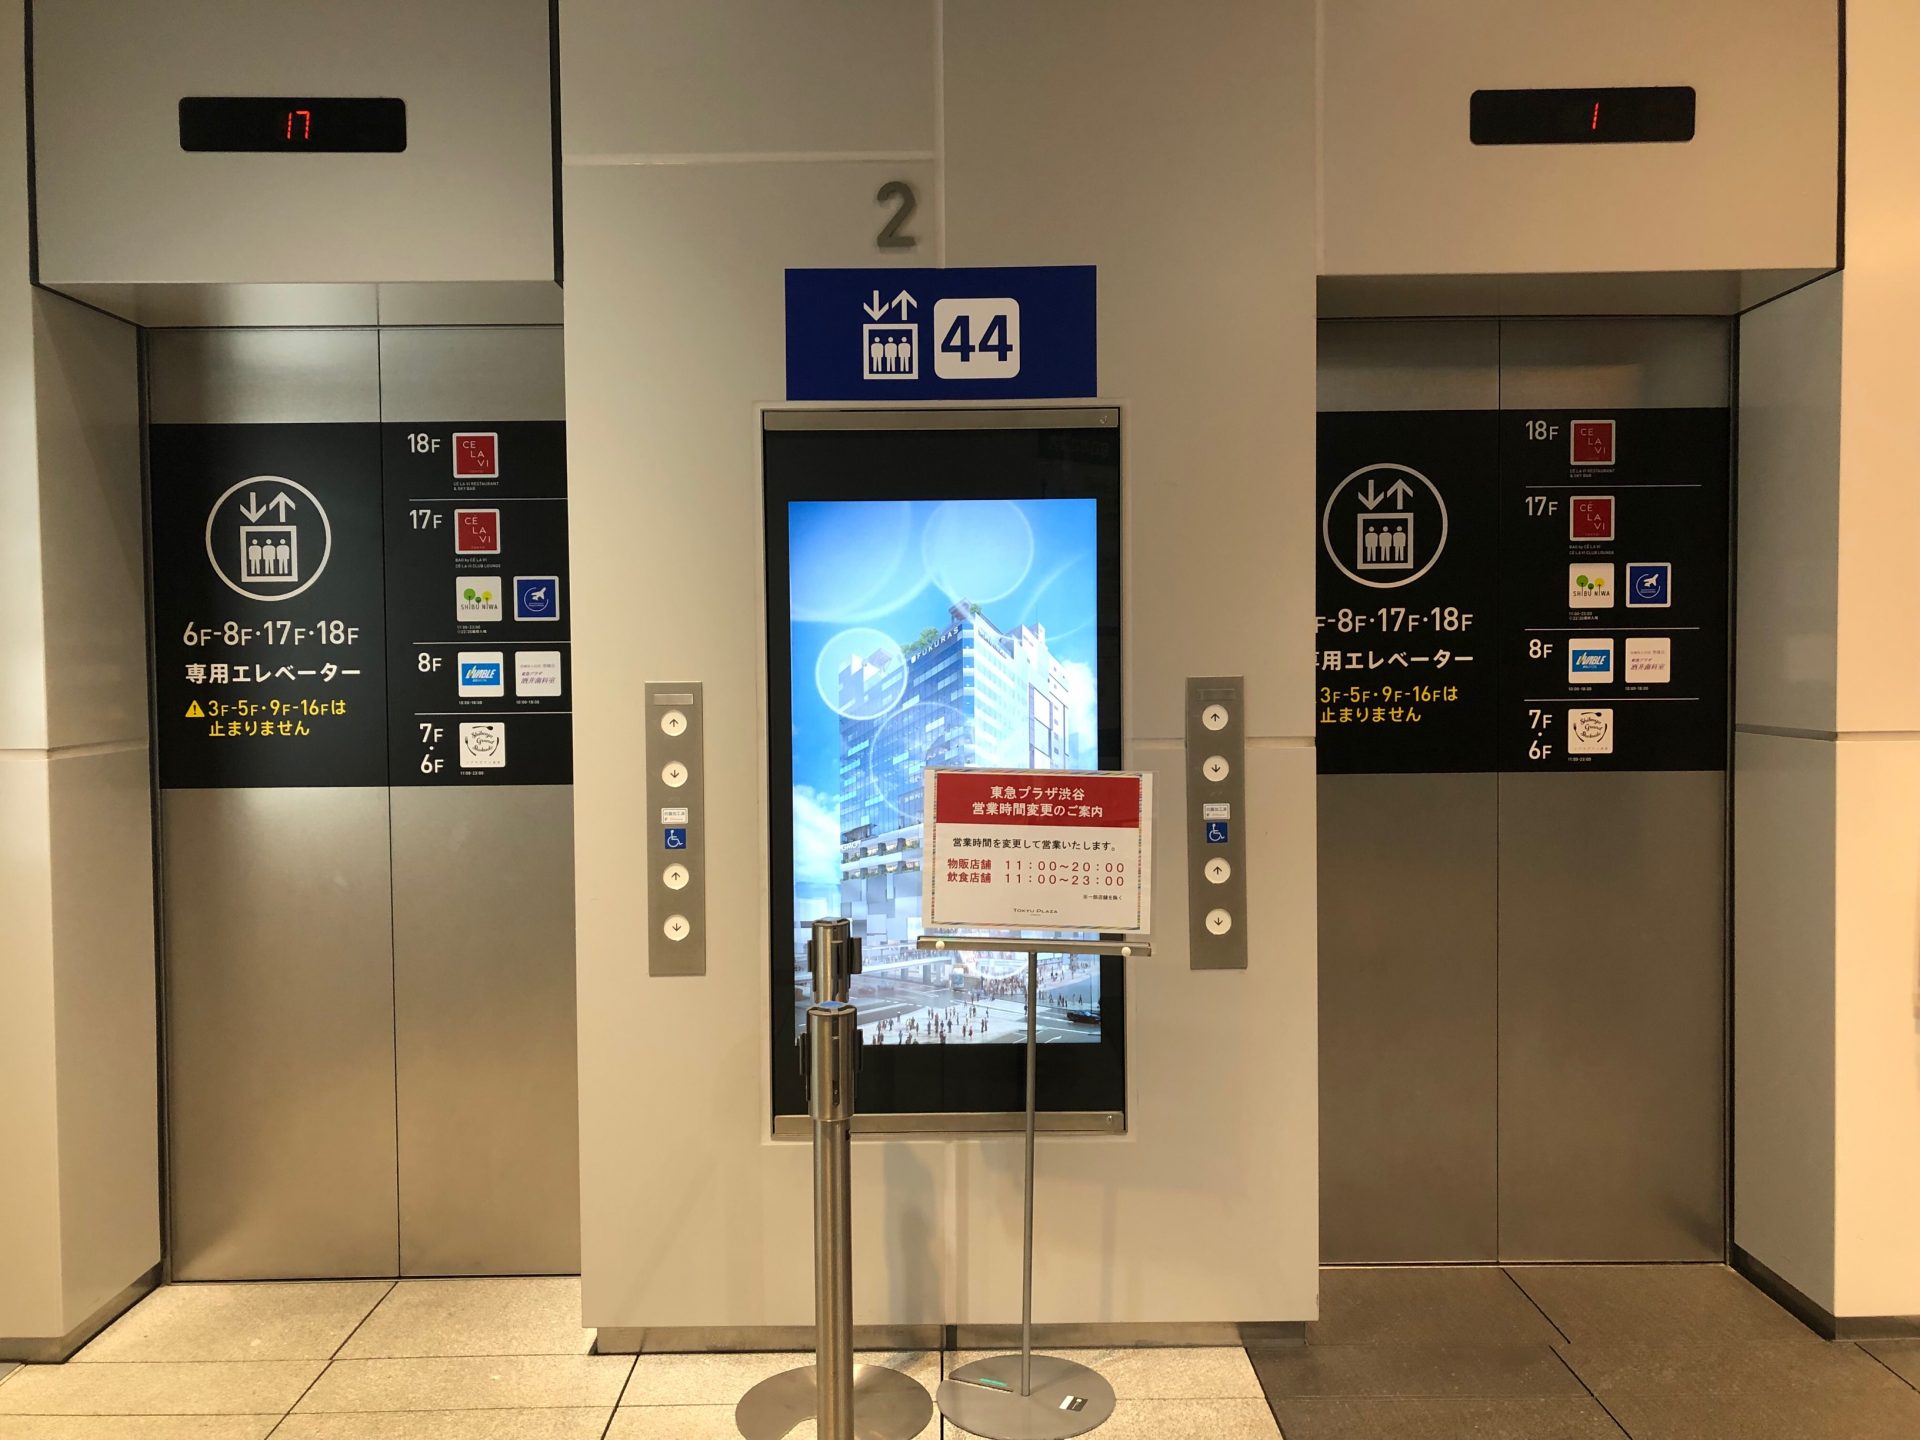 ビジネスエアポート渋谷フクラス 三井住友銀行前のエレベーターより17Fへ上がり、正面が受付